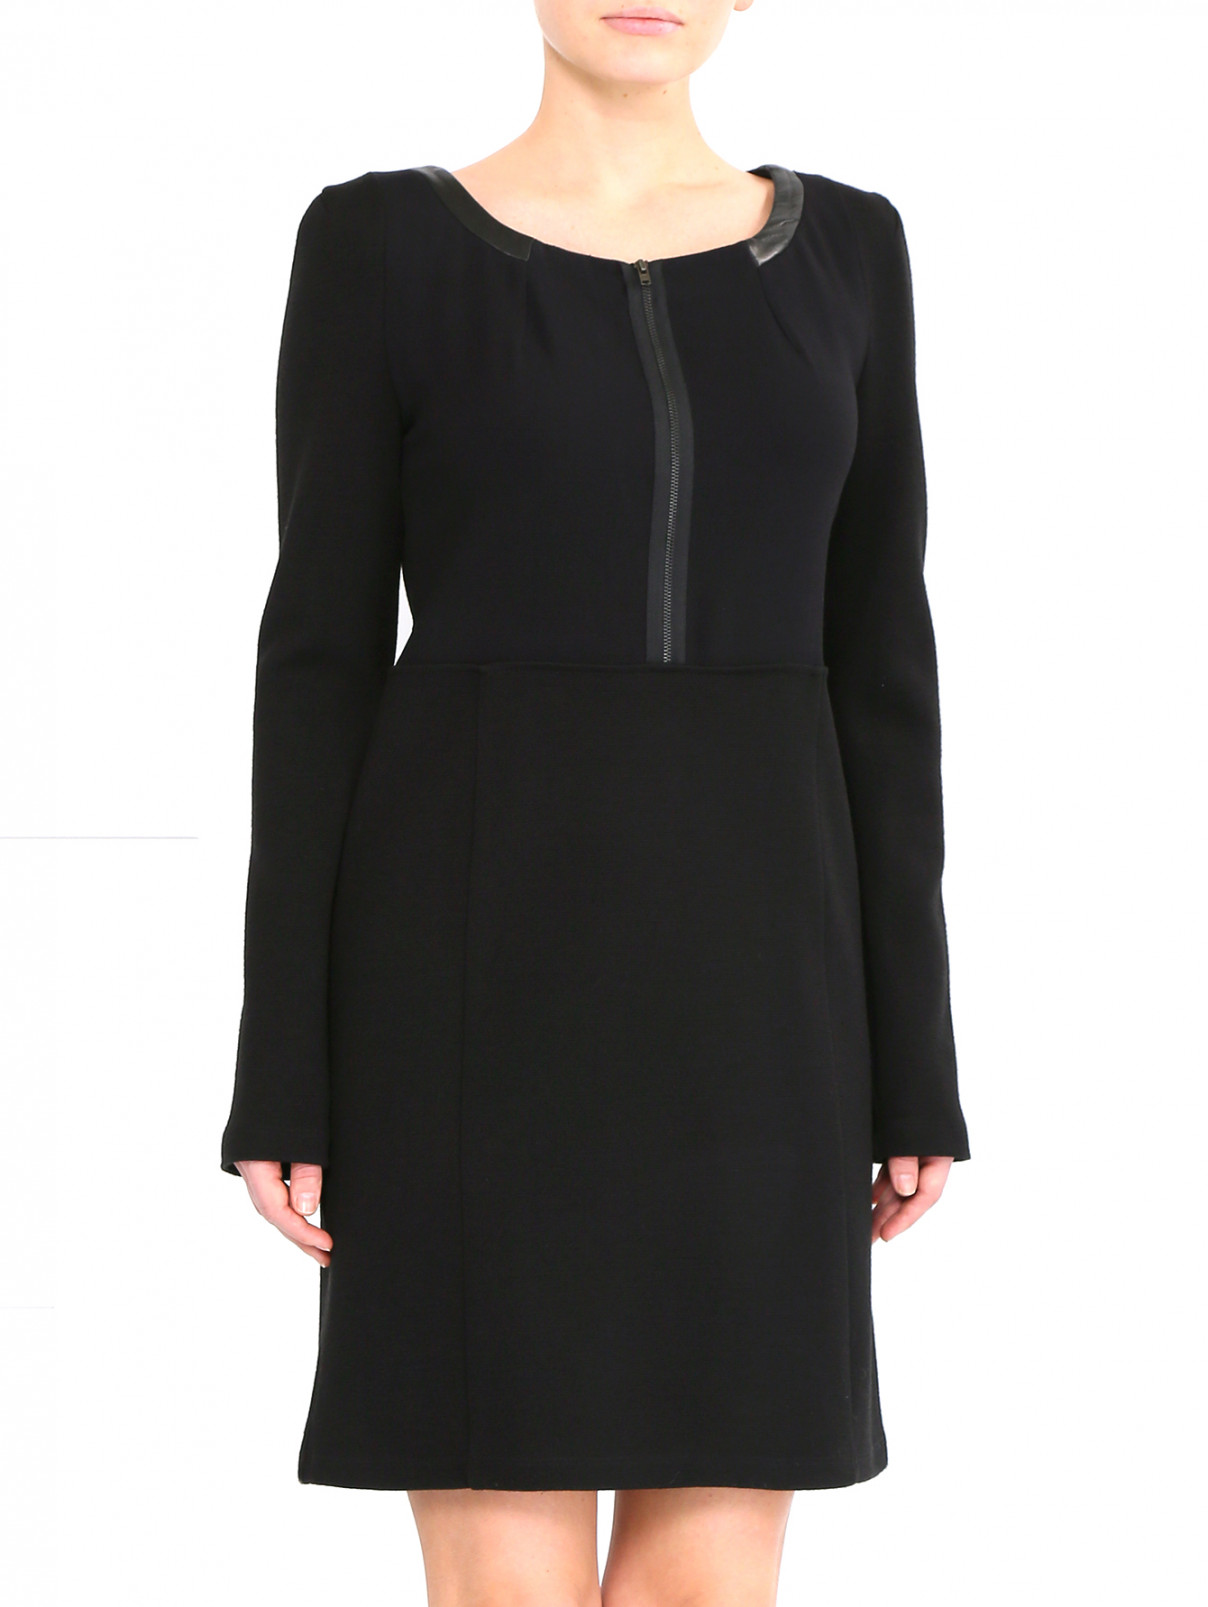 Трикотажное платье с молнией Athe Vanessa Bruno  –  Модель Верх-Низ  – Цвет:  Черный